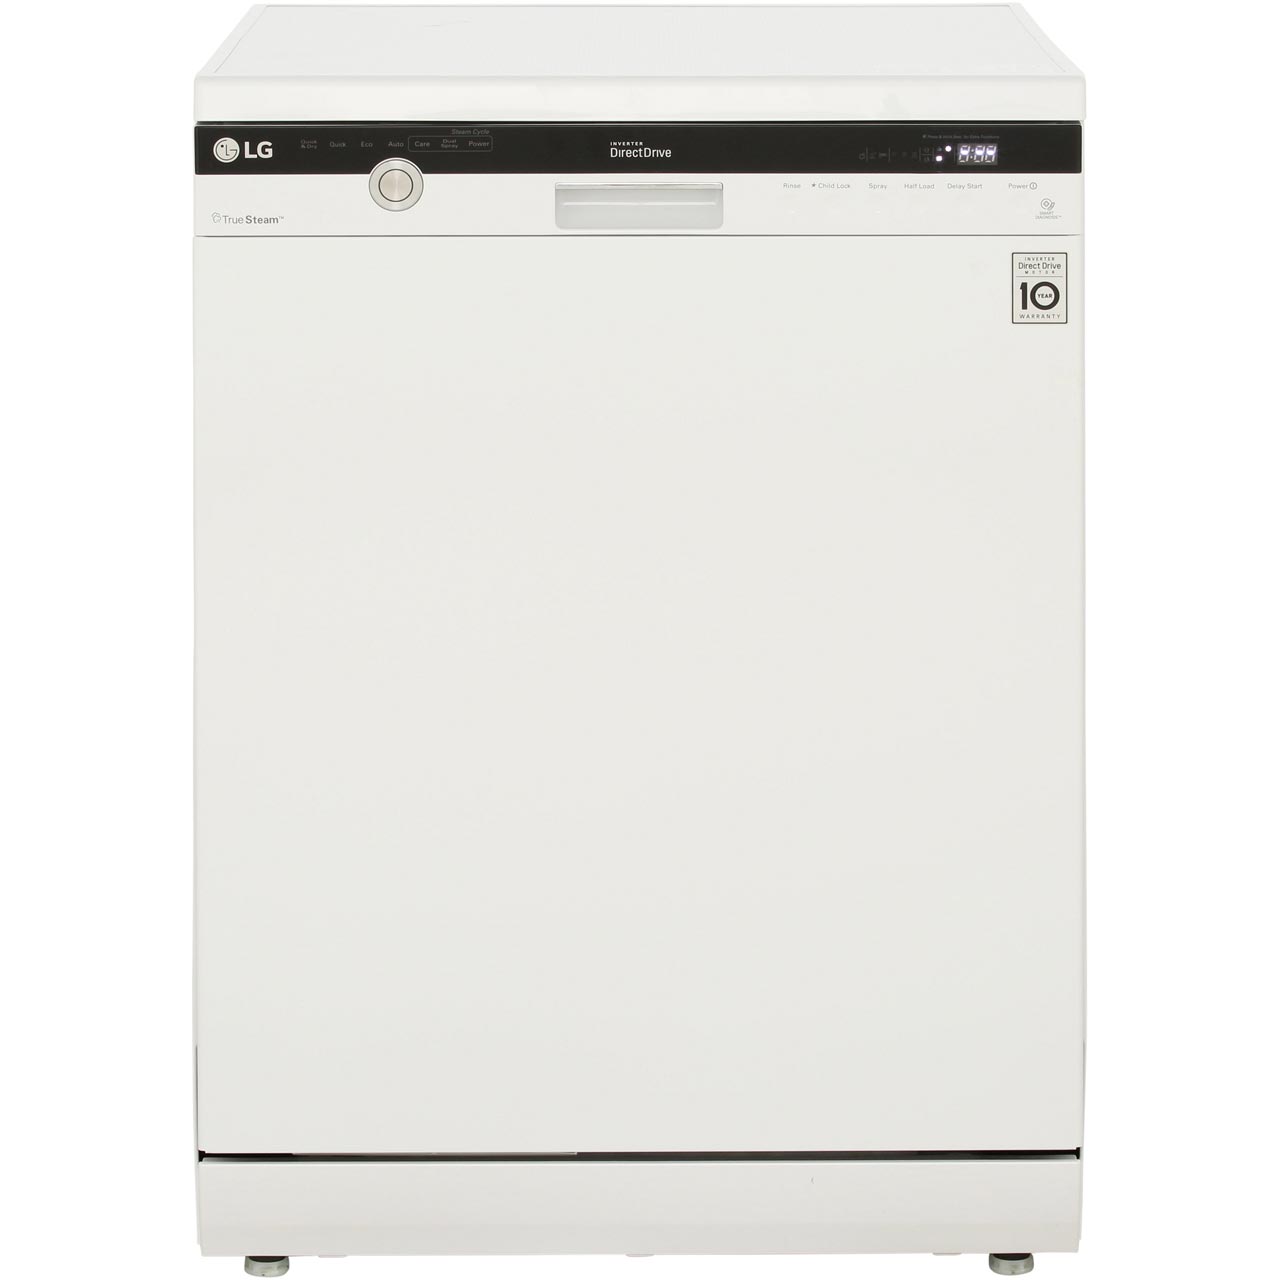 LG TrueSteamã¢ D1484WF Standard Dishwasher Review